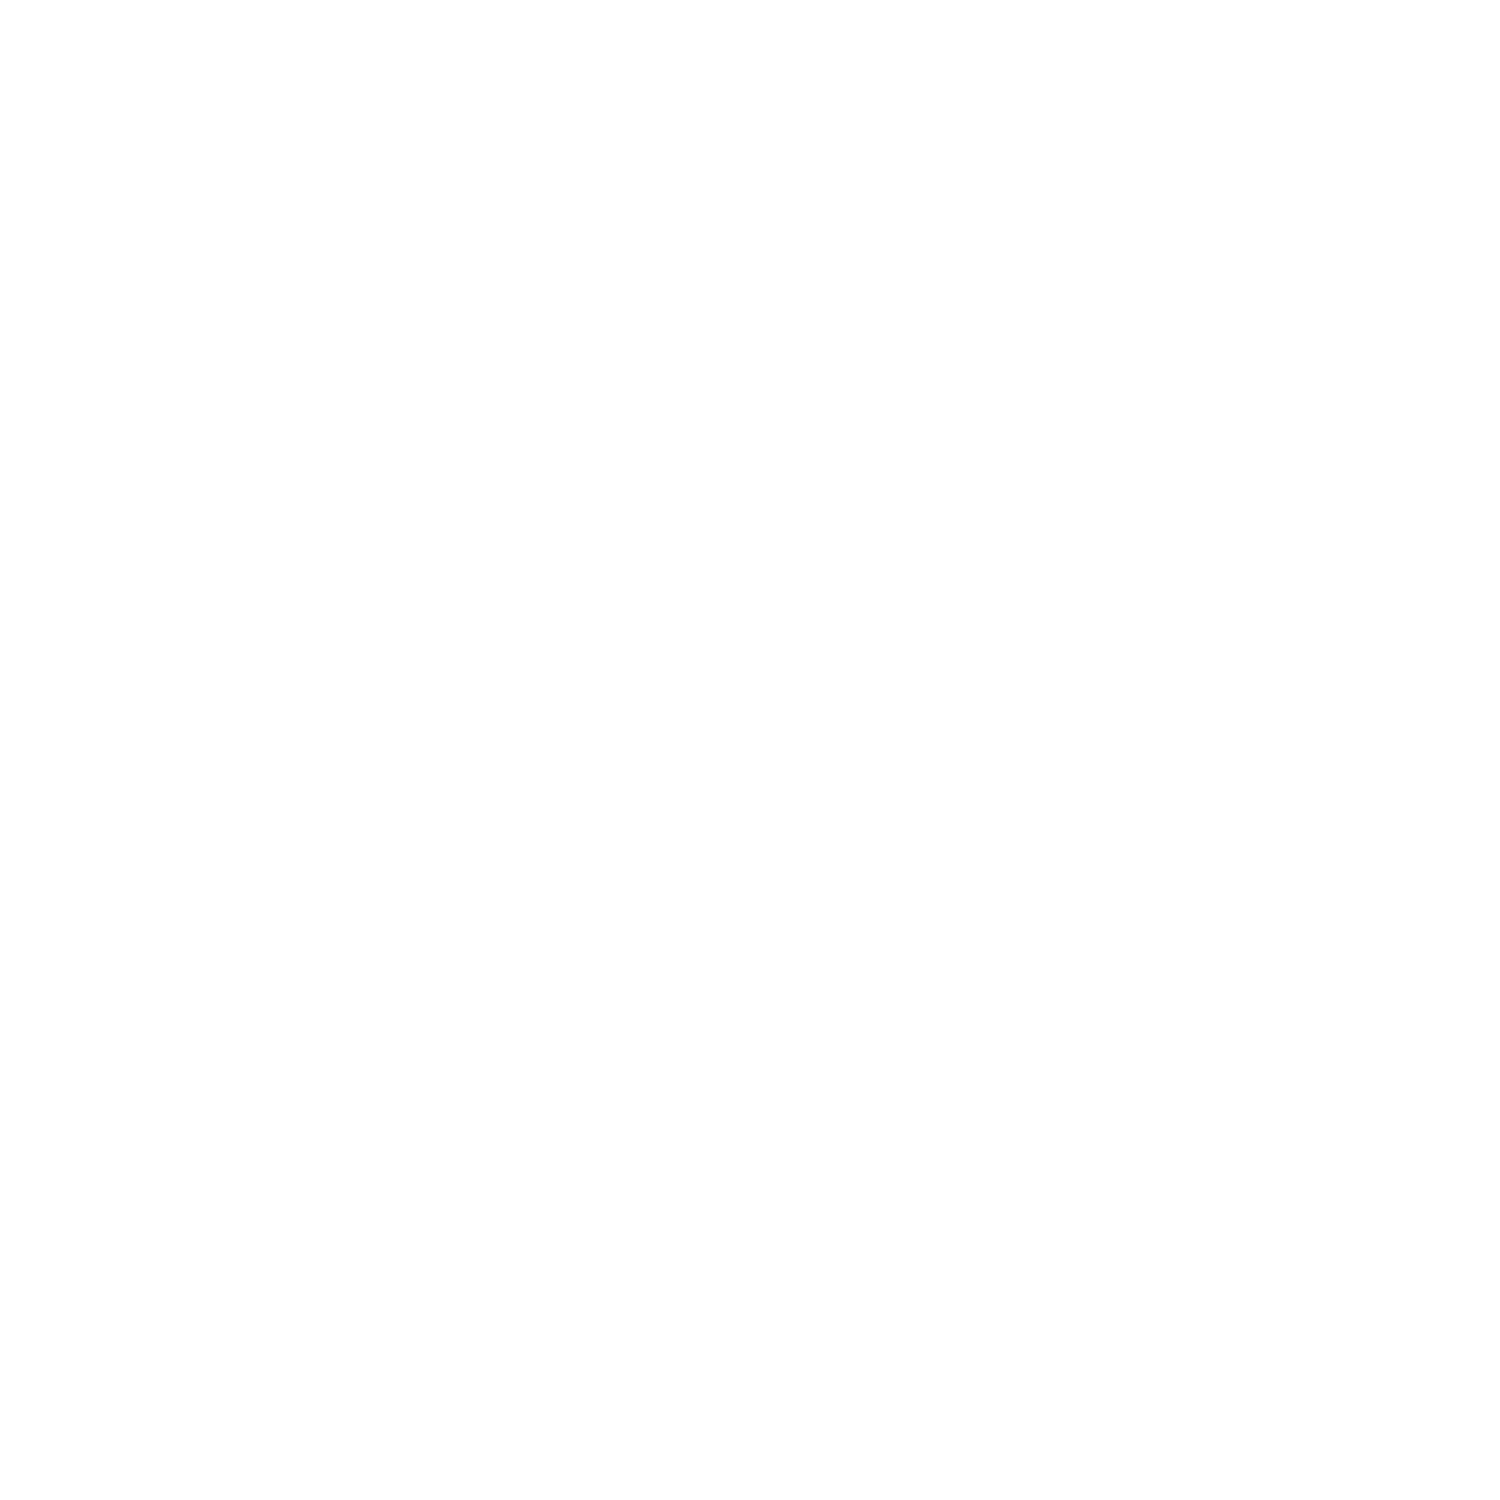 nobugs-it-partner-logo-_0012_zimbra